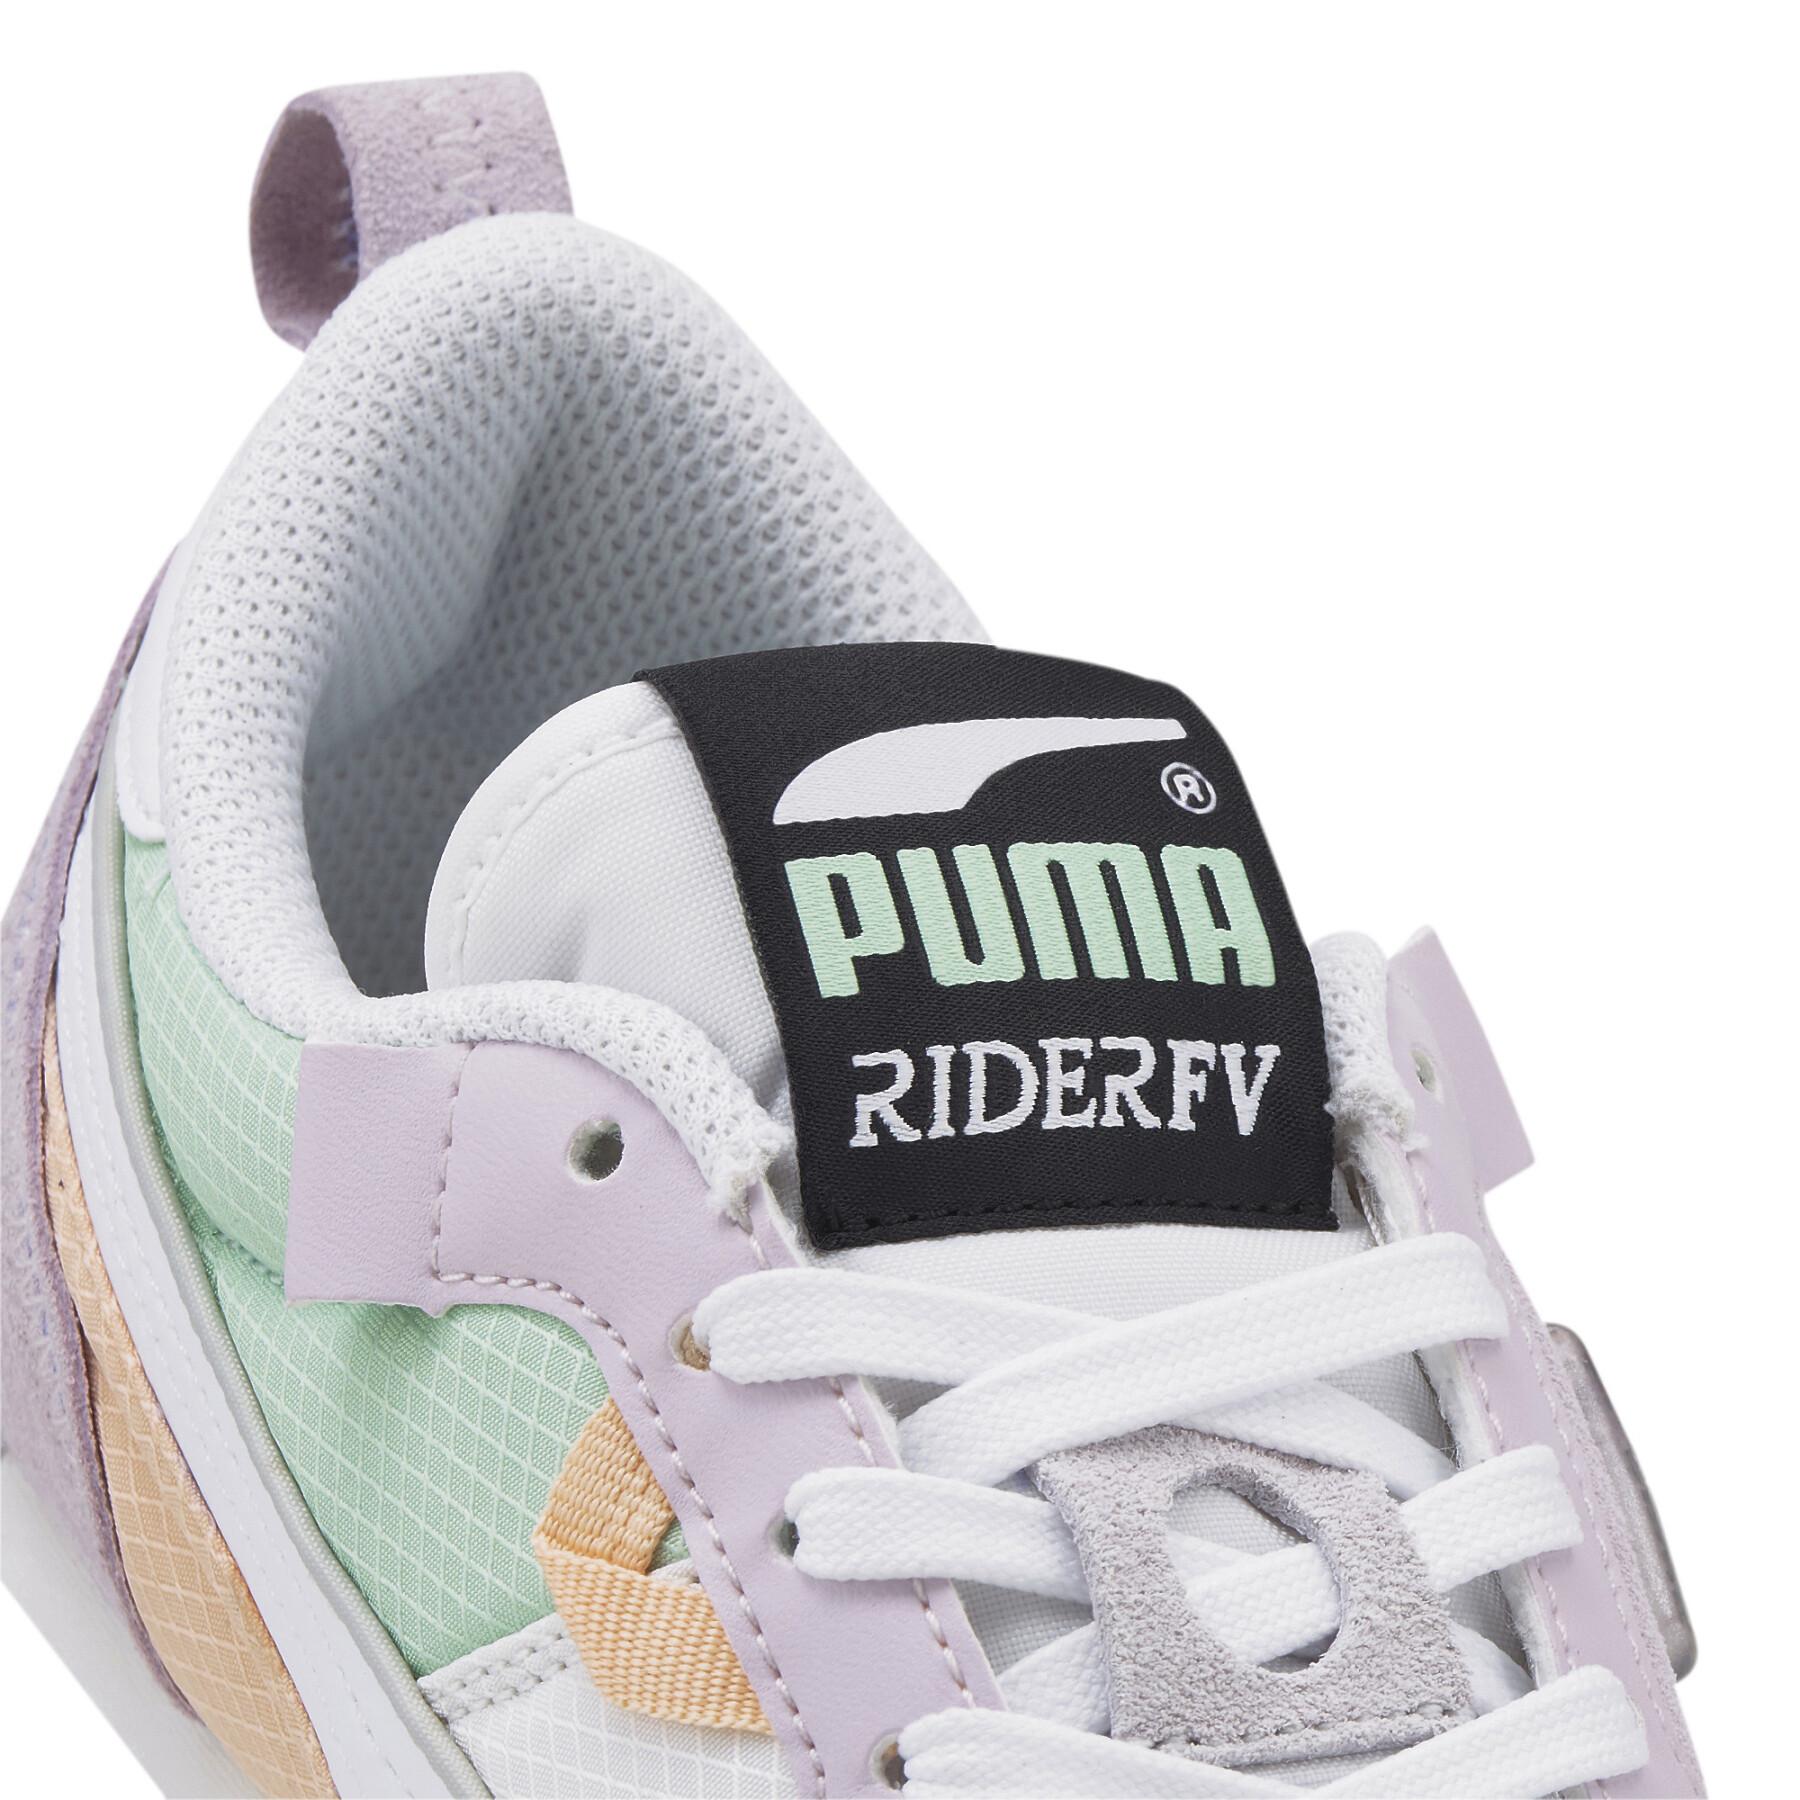 Träningsskor för kvinnor Puma Rider Fv Futurev